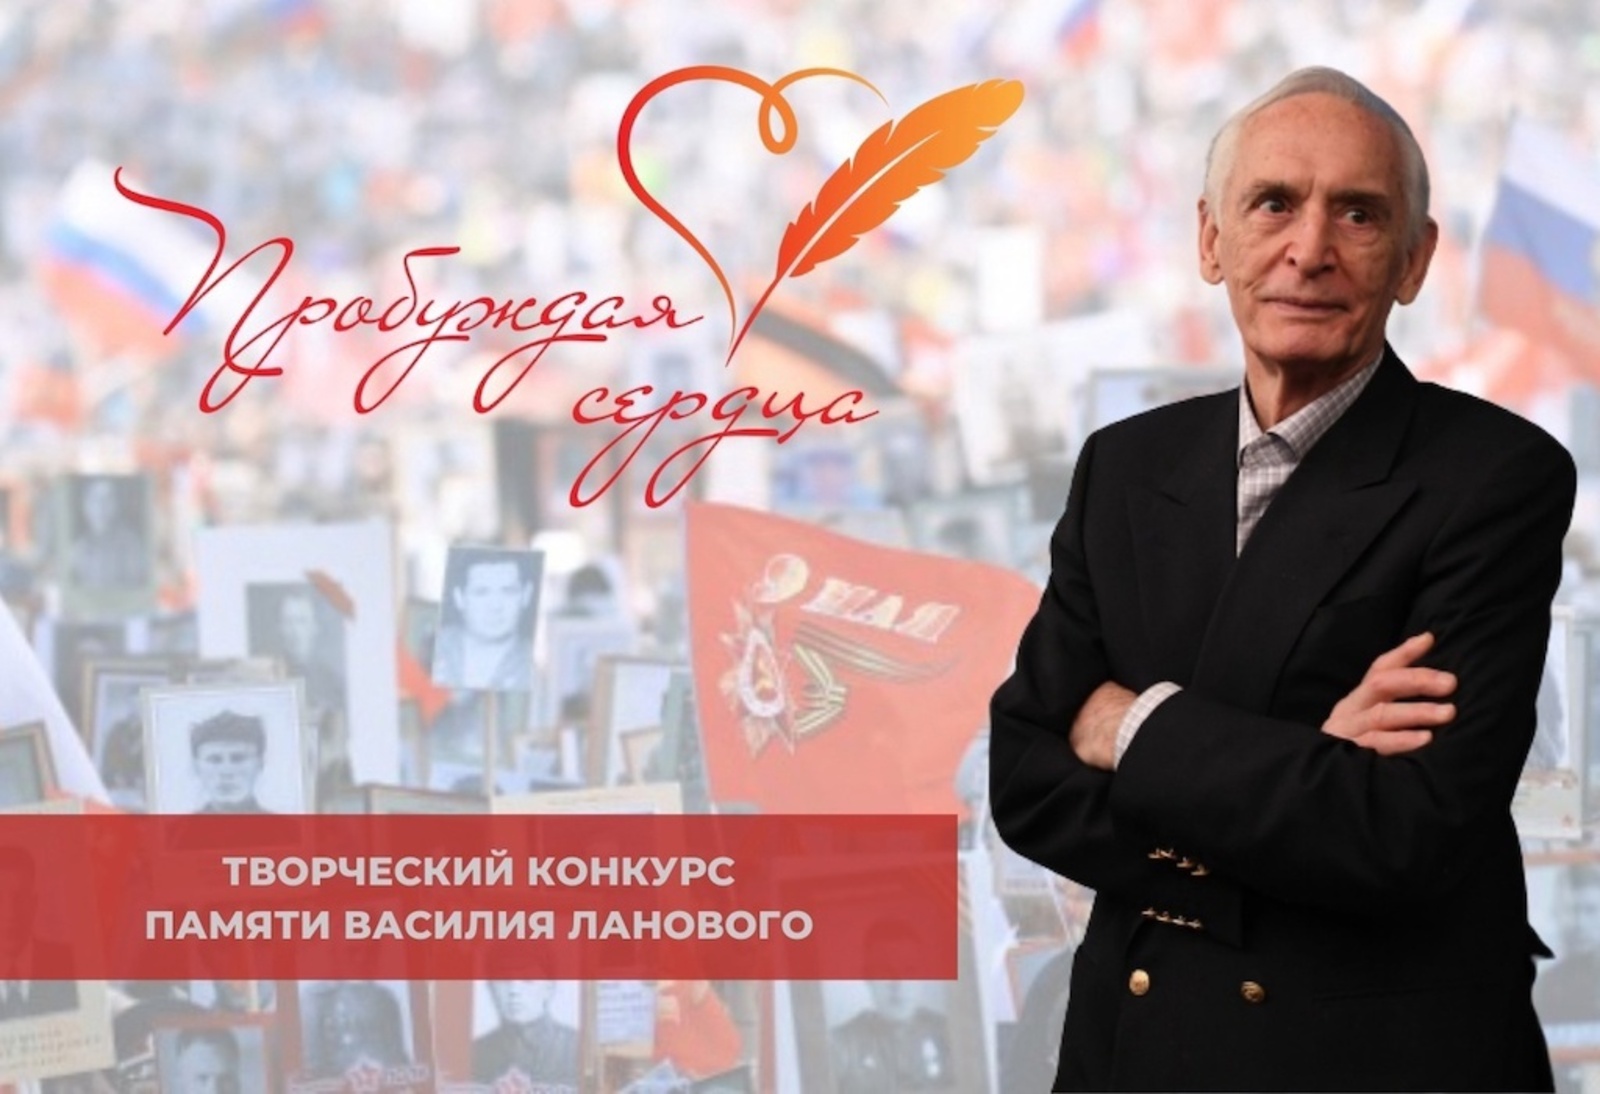 Приглашаем жителей Белгородского района принять участие в творческом конкурсе «Пробуждая сердца».